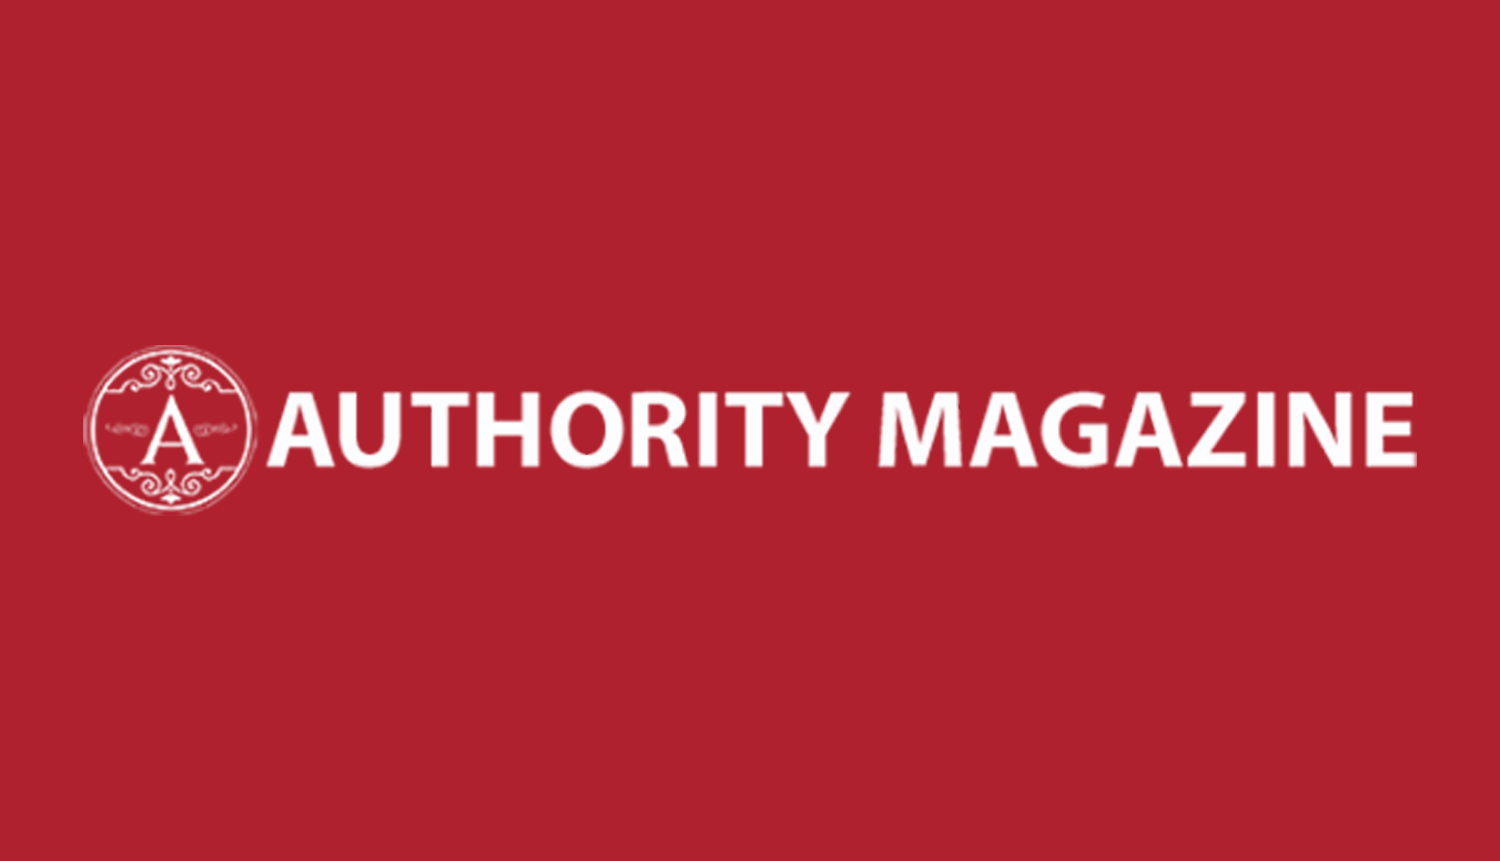 AuthorityMagazine unsmushed